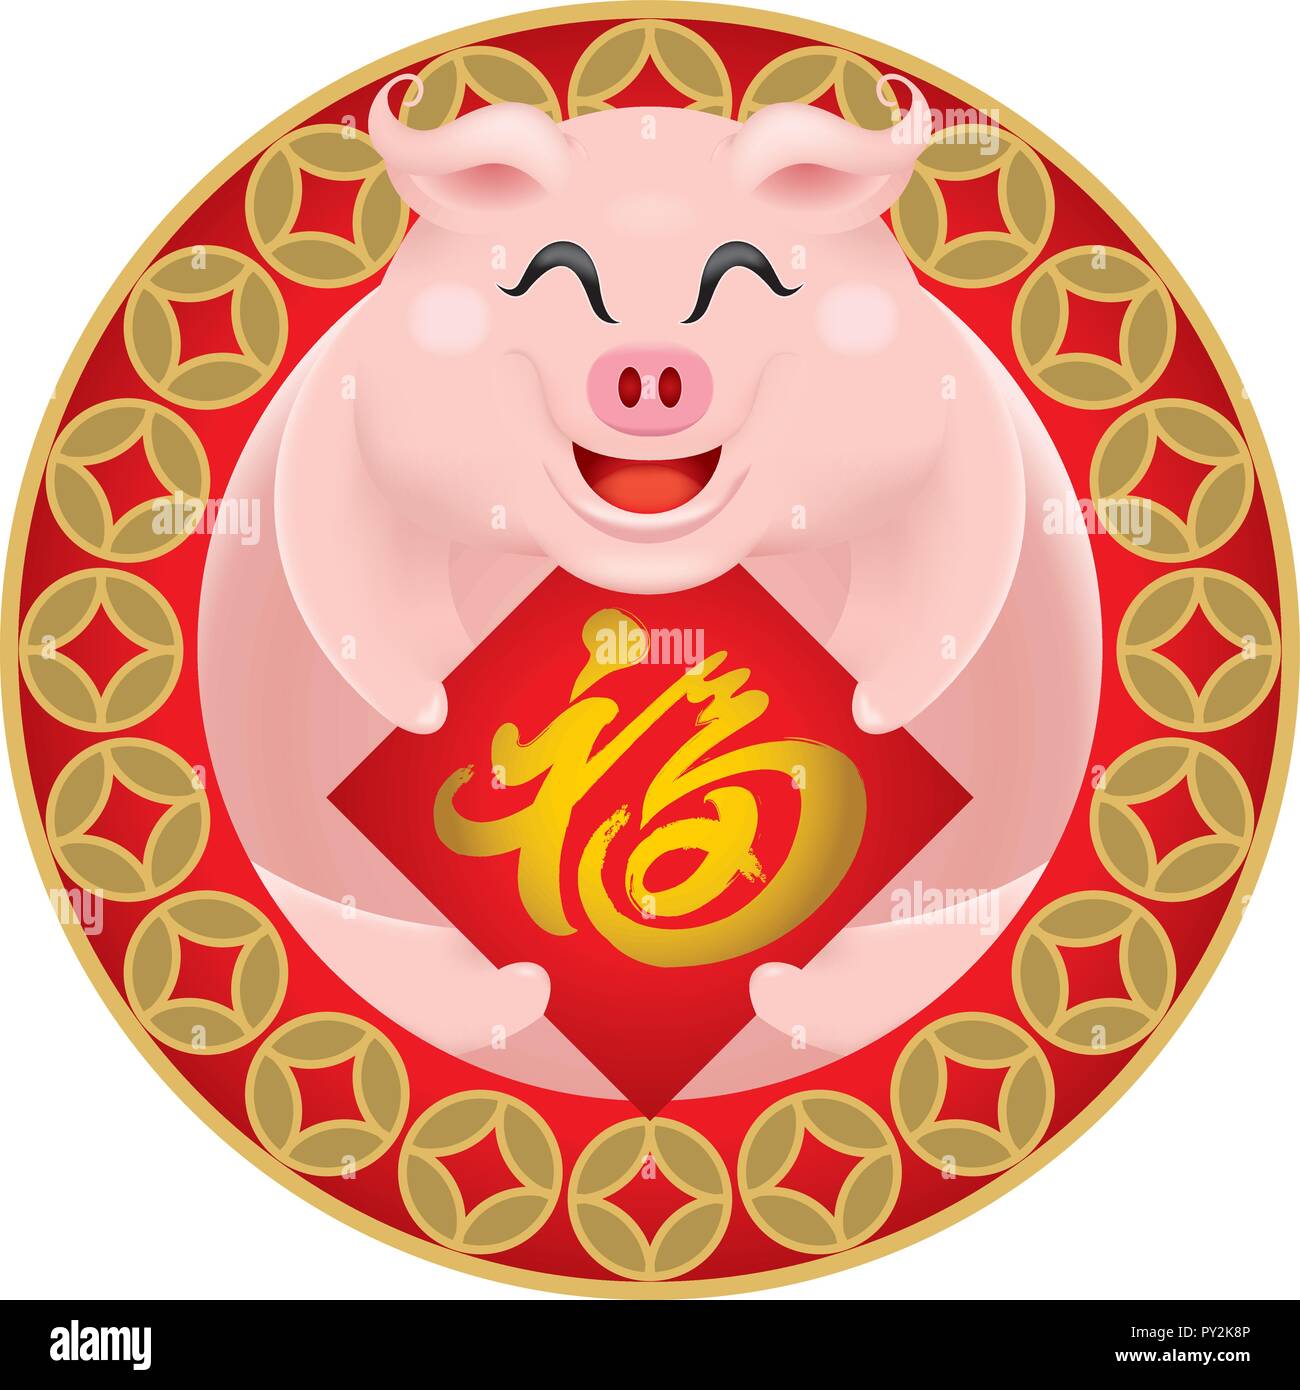 La imagen del cerdo pequeño y lindo durante el Año Nuevo chino 2019, el año del cerdo. Título: la prosperidad. Ilustración del Vector